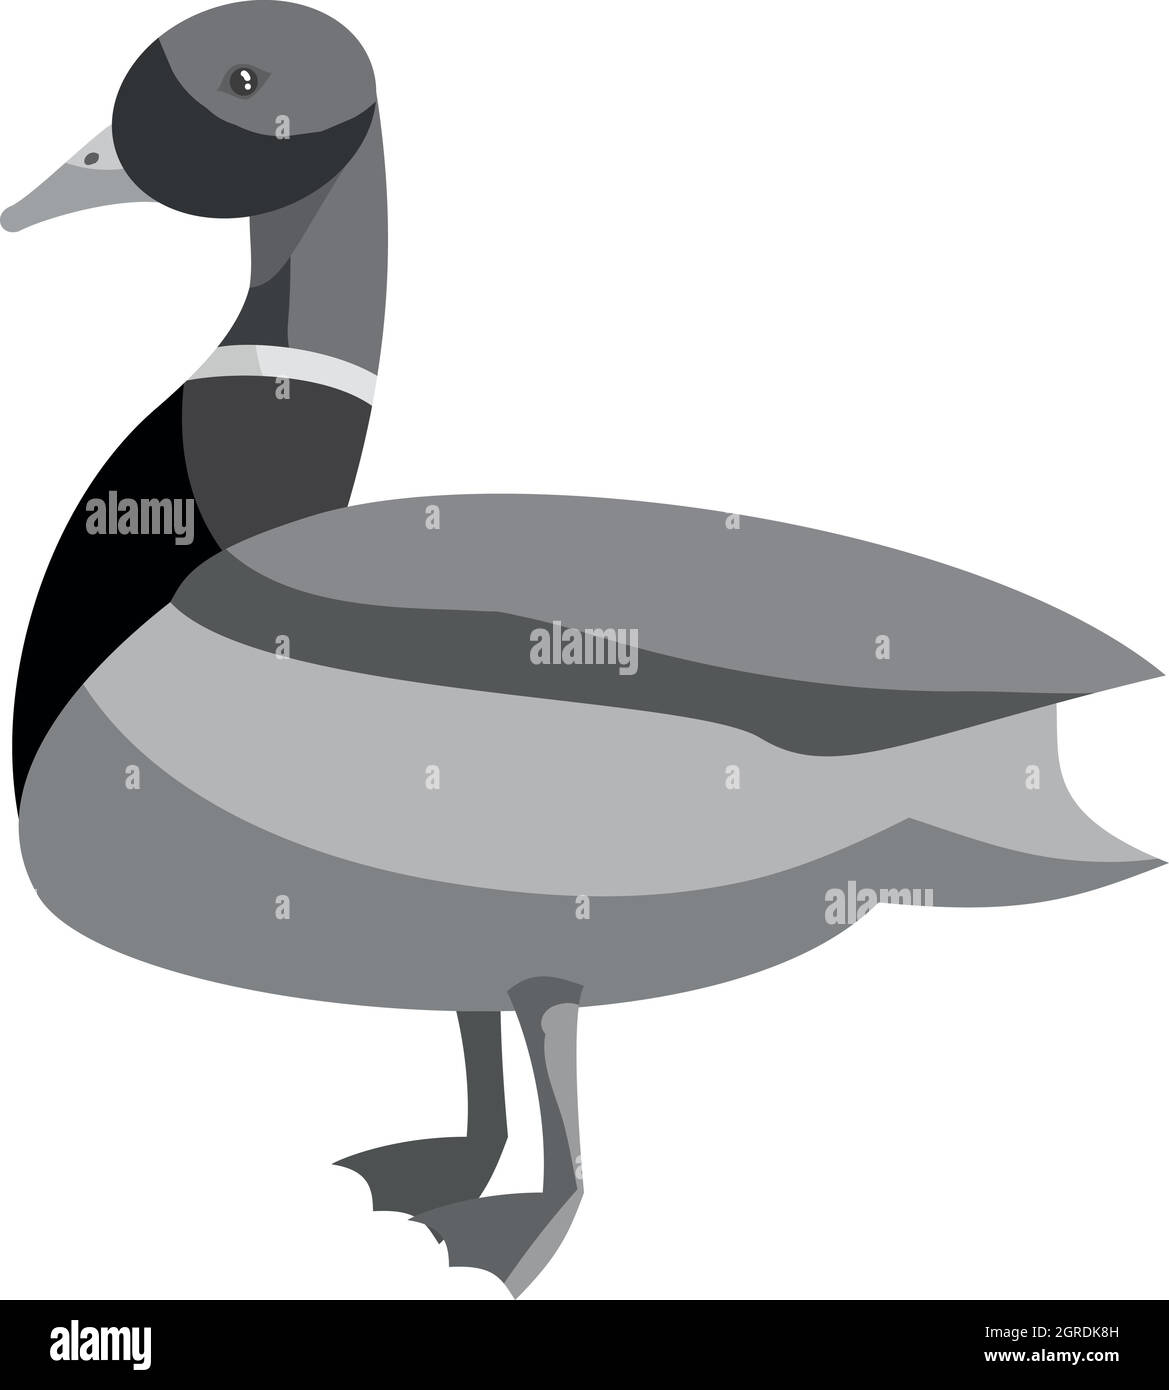 Mallard duck icon, black monochrome style Stock Vector